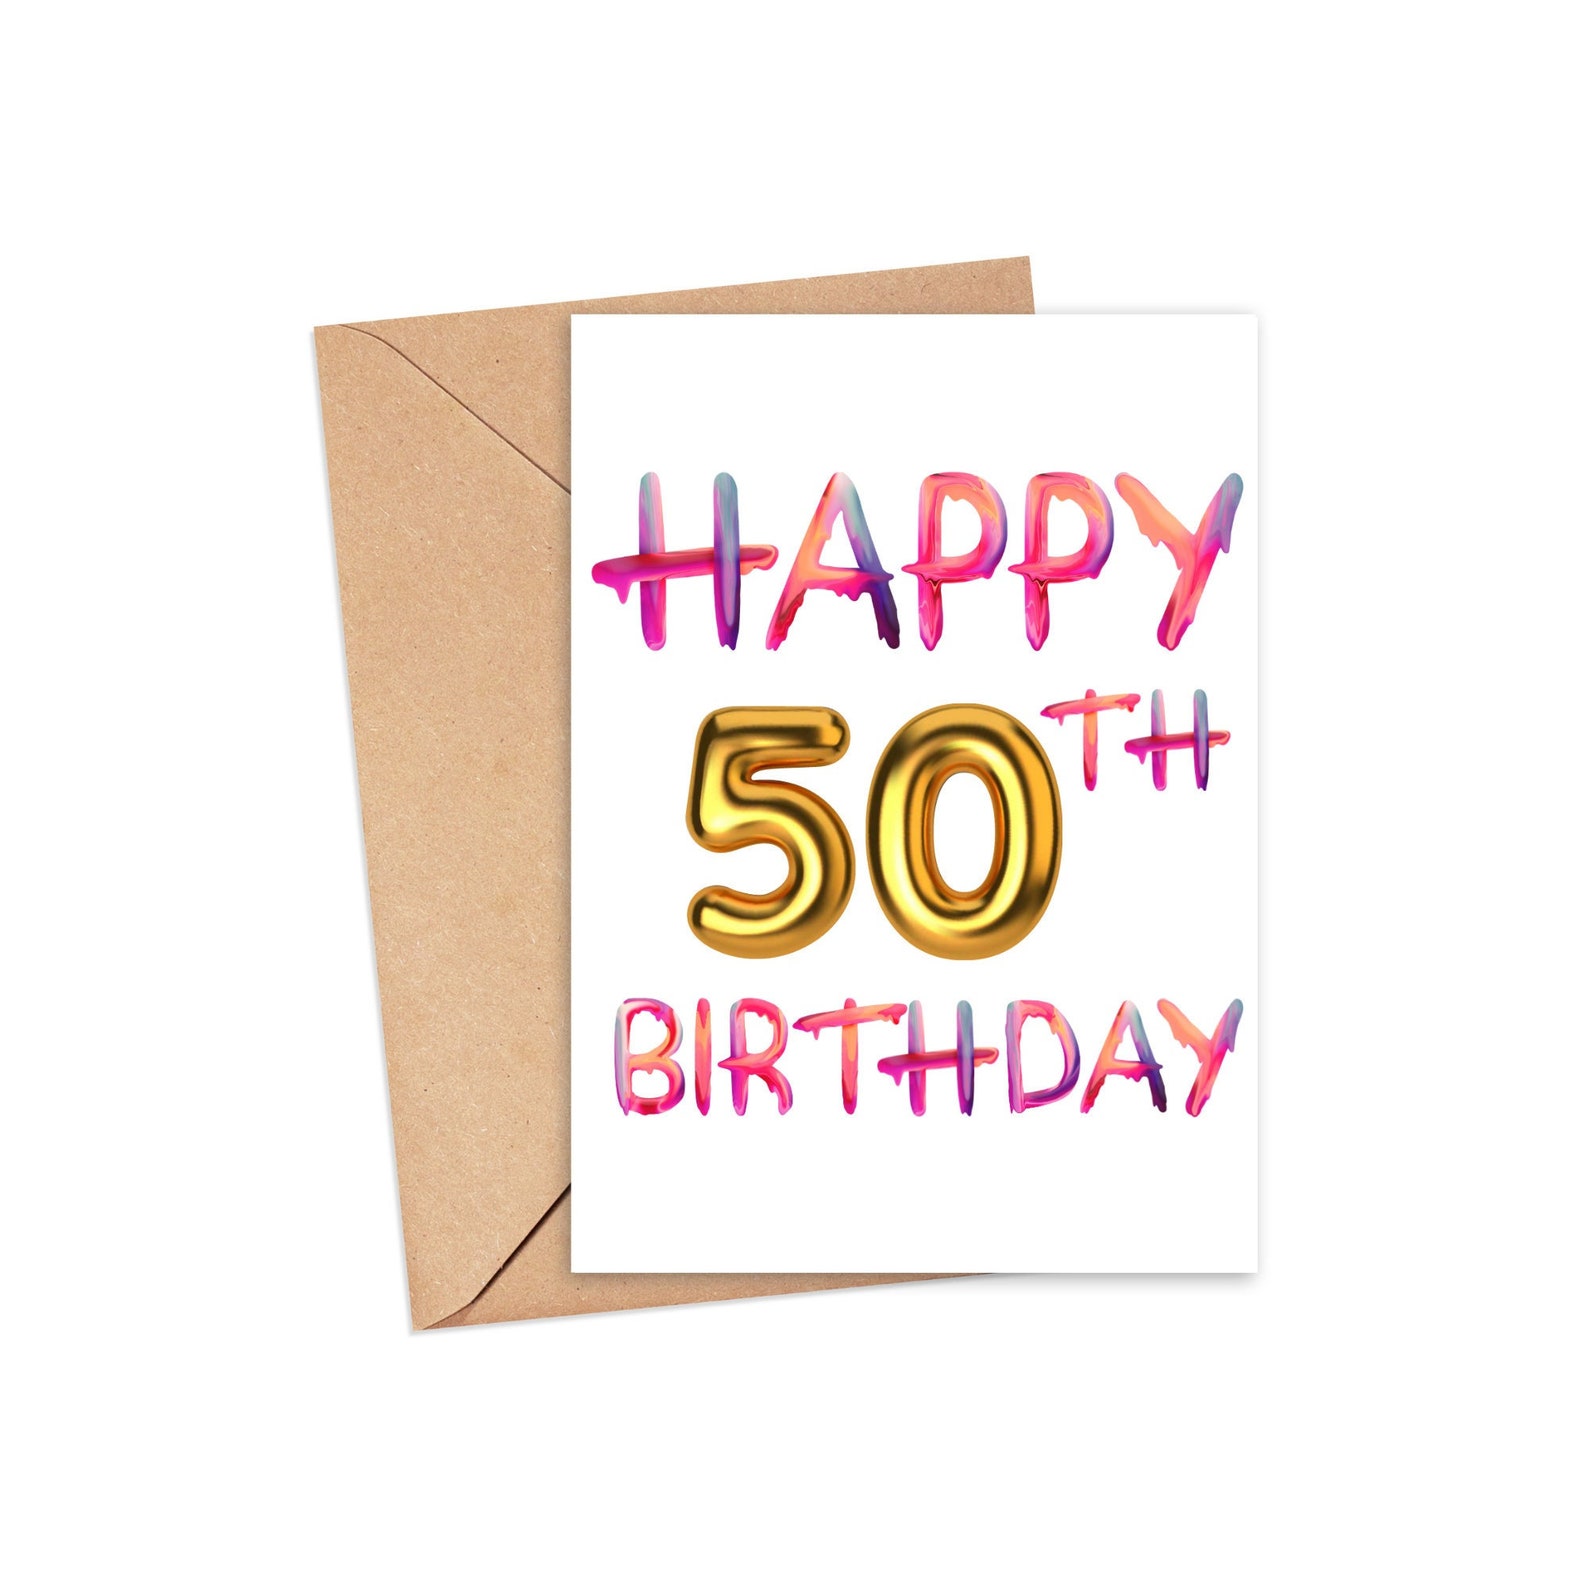 Happy 50th Birthday Card Happy Birthday 50 Birthday Card | Etsy